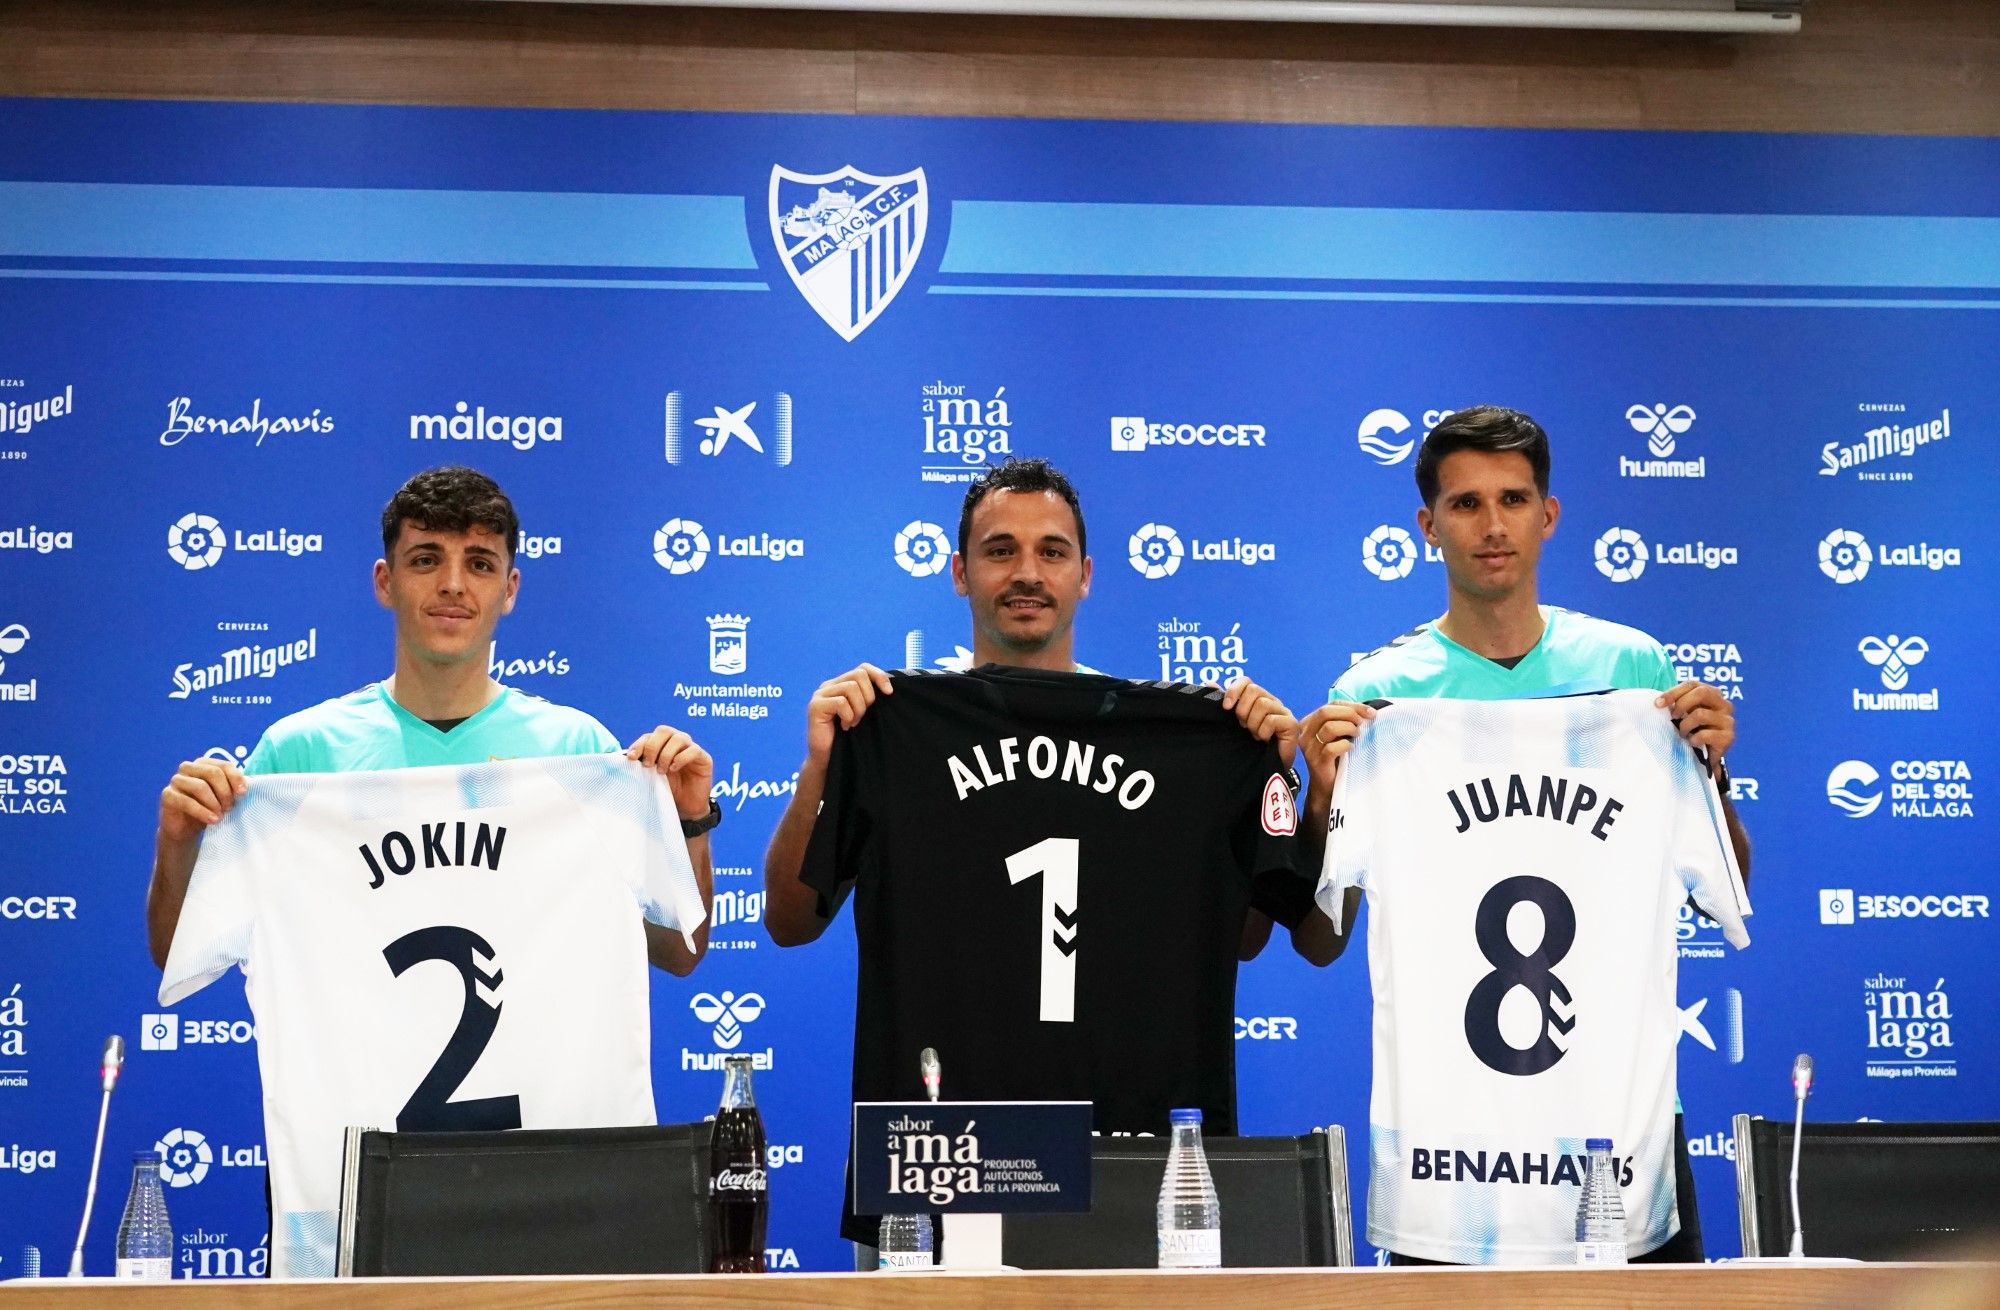 Juanpe, Alfonso Herrero y Jokin Gabilondo, presentados como nuevos jugadores del Málaga CF